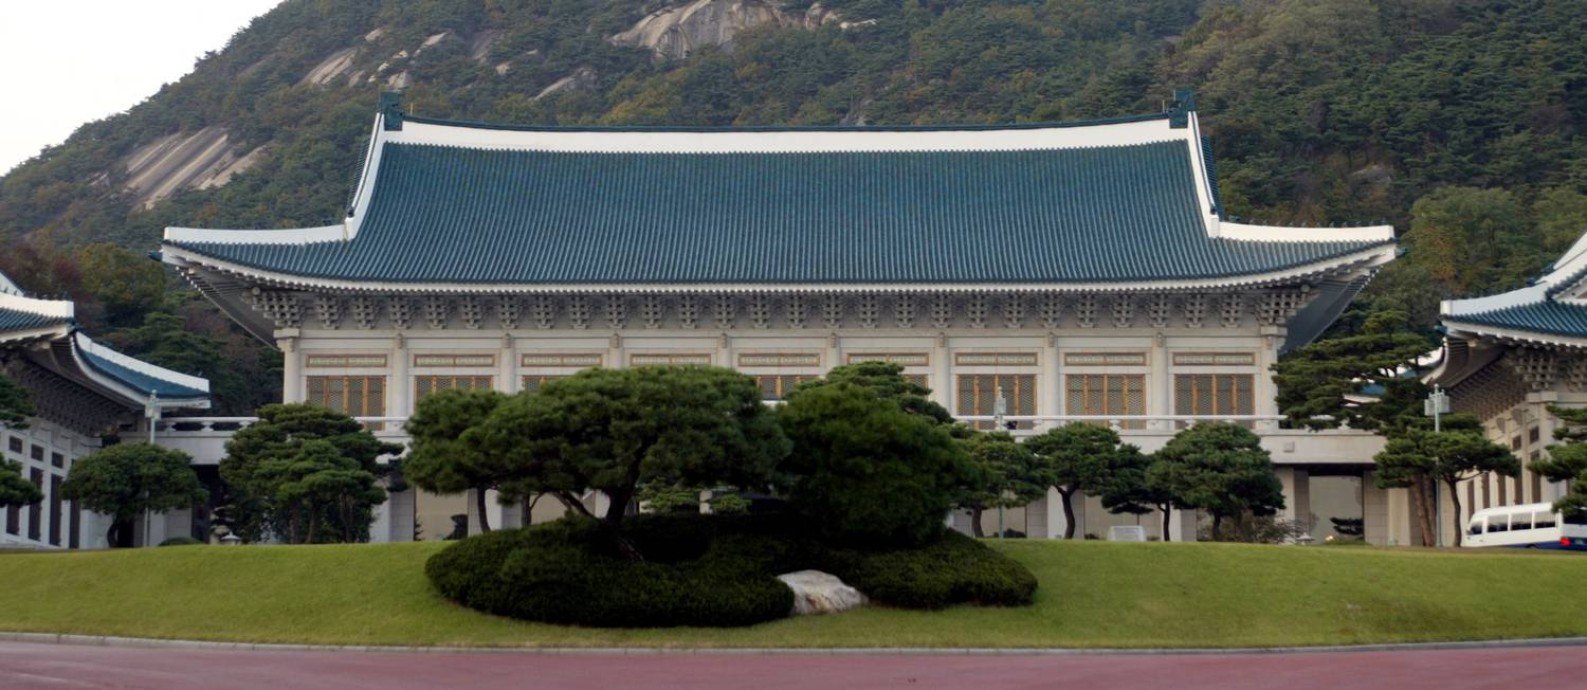 Casa Azul, sede da Presidência da República da Coreia, em Seul Foto: Reuters Photographer / REUTERS